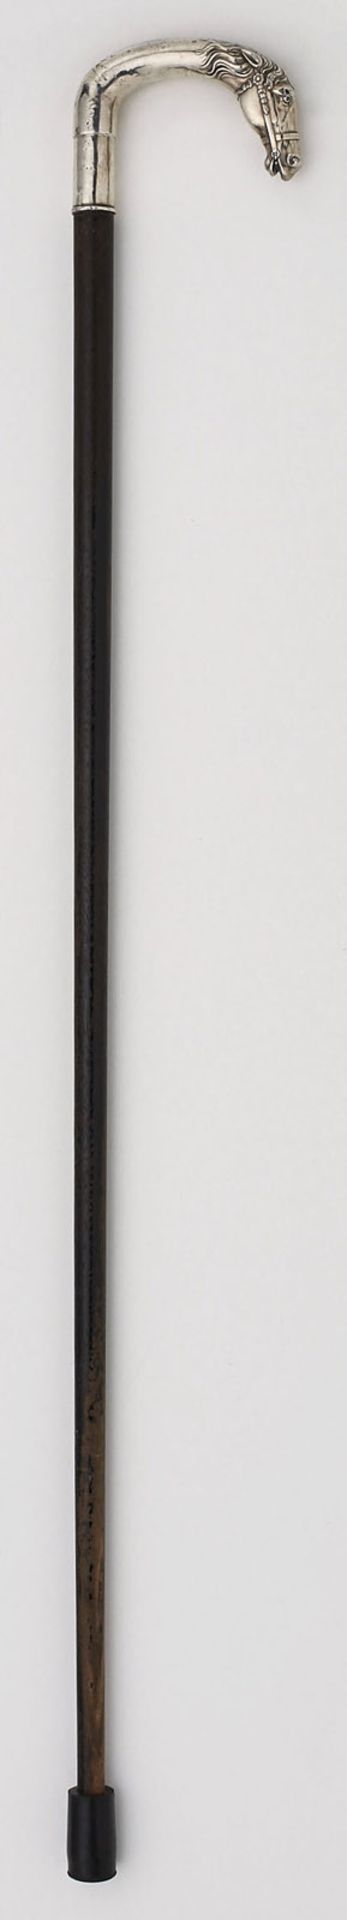 Flanierstock mit Silbergriff "Pferdekopf" - Bild 2 aus 2